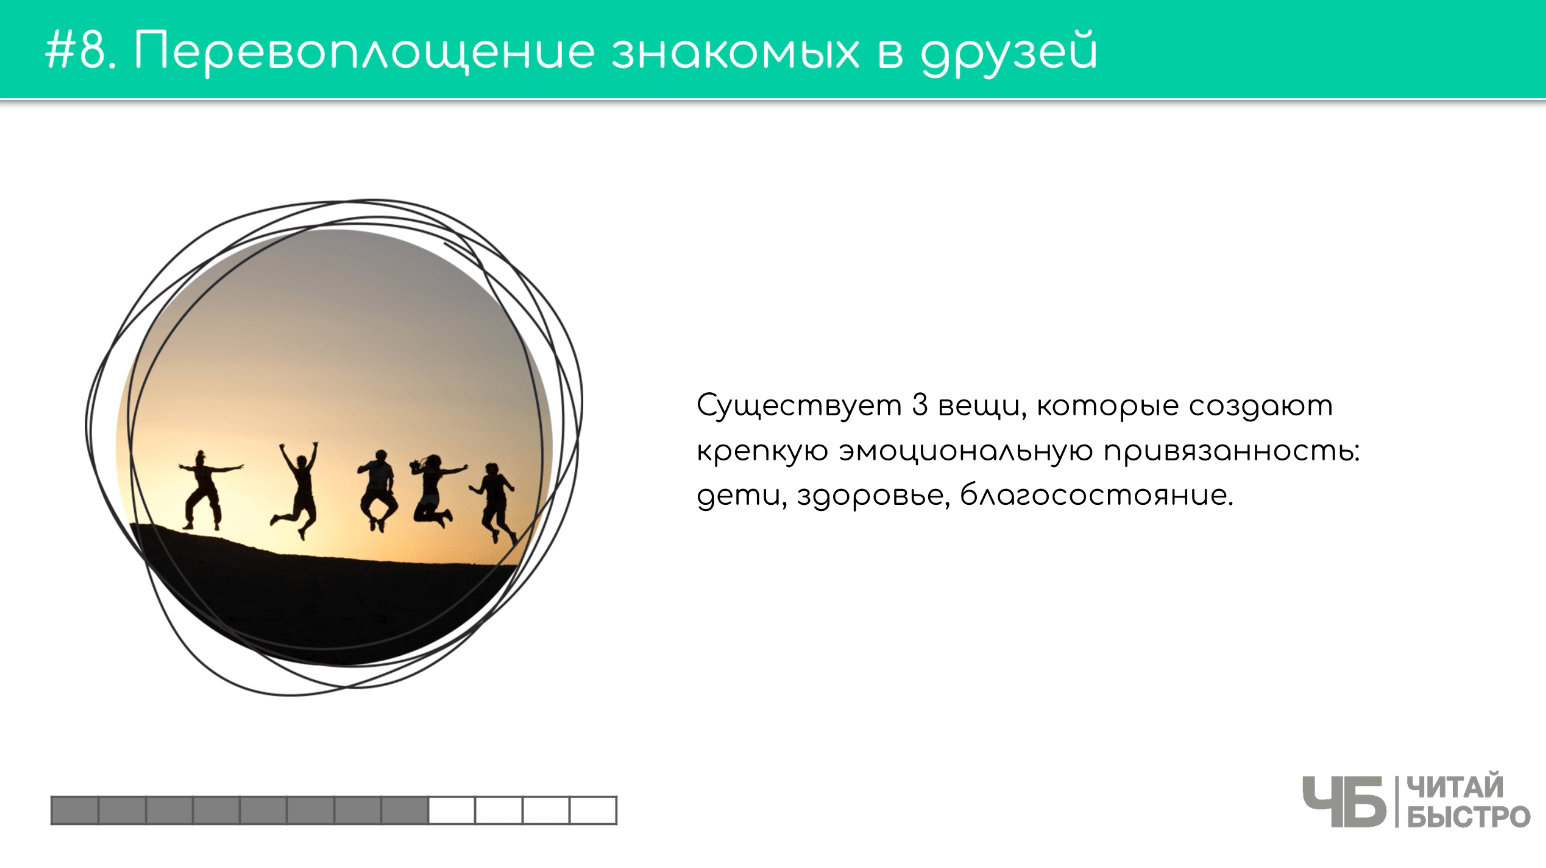 На этом слайде изображен тезис о перевоплощении знакомых в друзей и иллюстрация прыгающих людей.